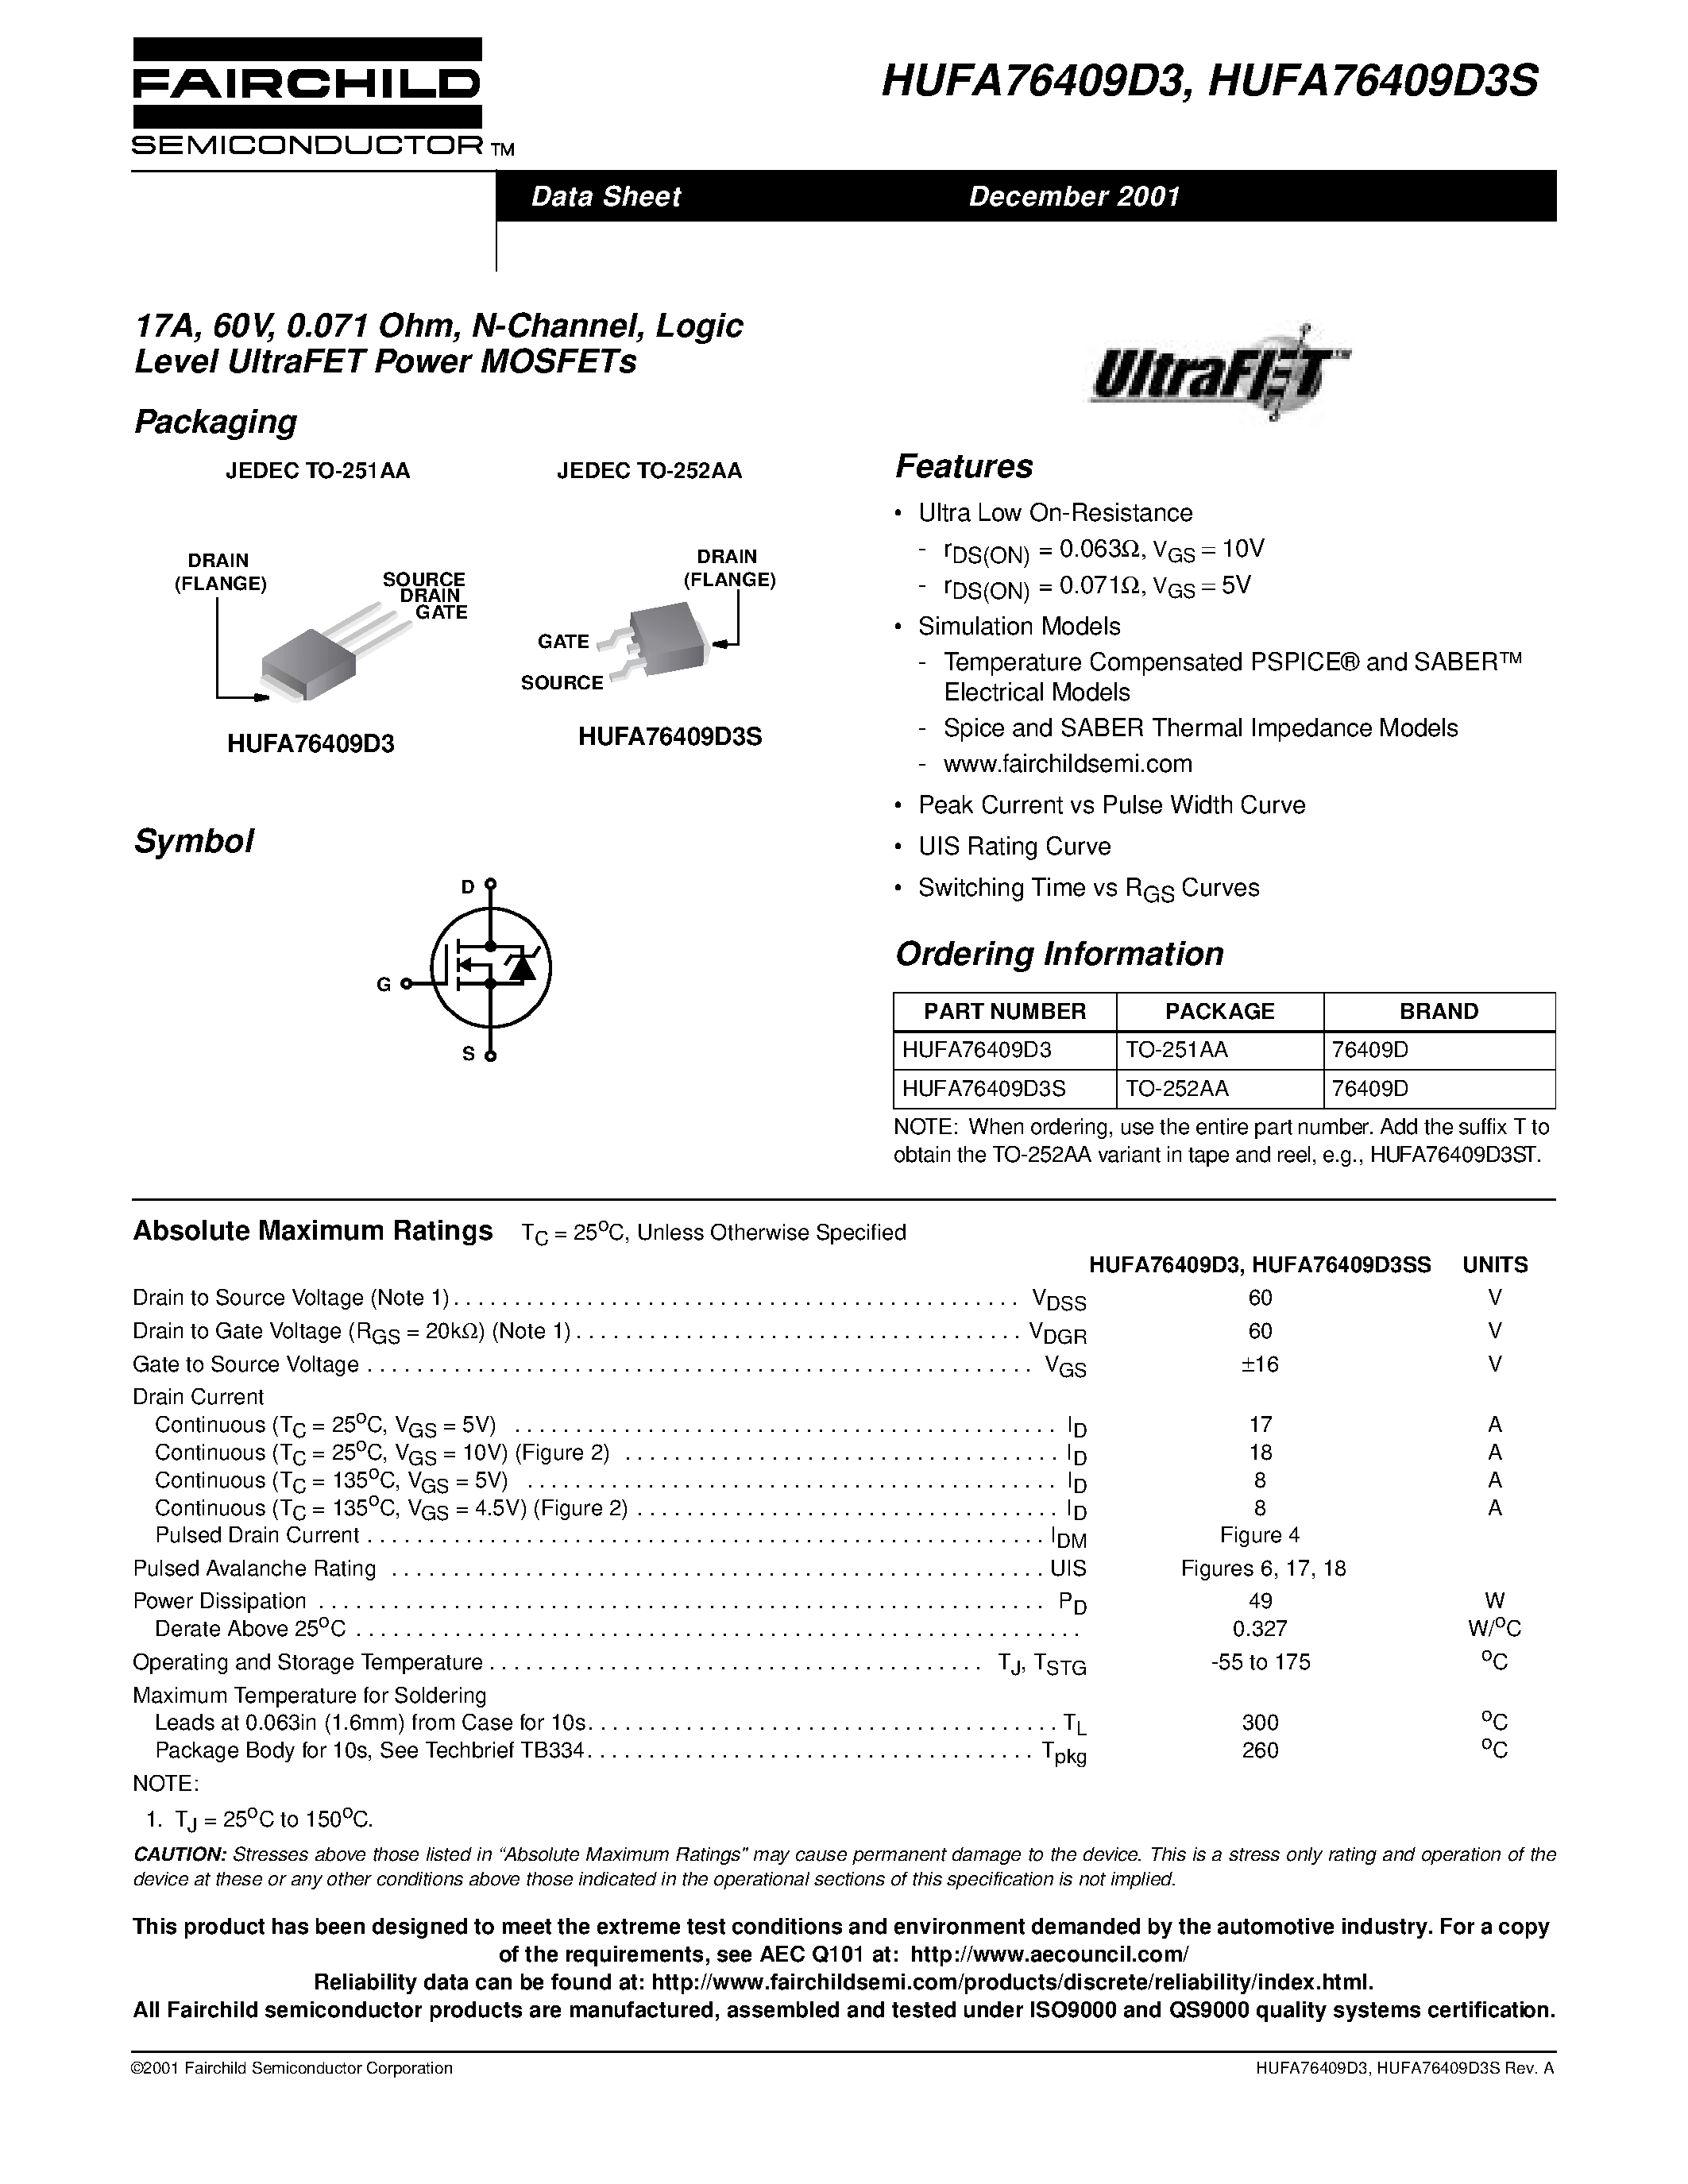 Даташит HUFA76409D3 - 17A/ 60V/ 0.071 Ohm/ N-Channel/ Logic Level UltraFET Power MOSFETs страница 1